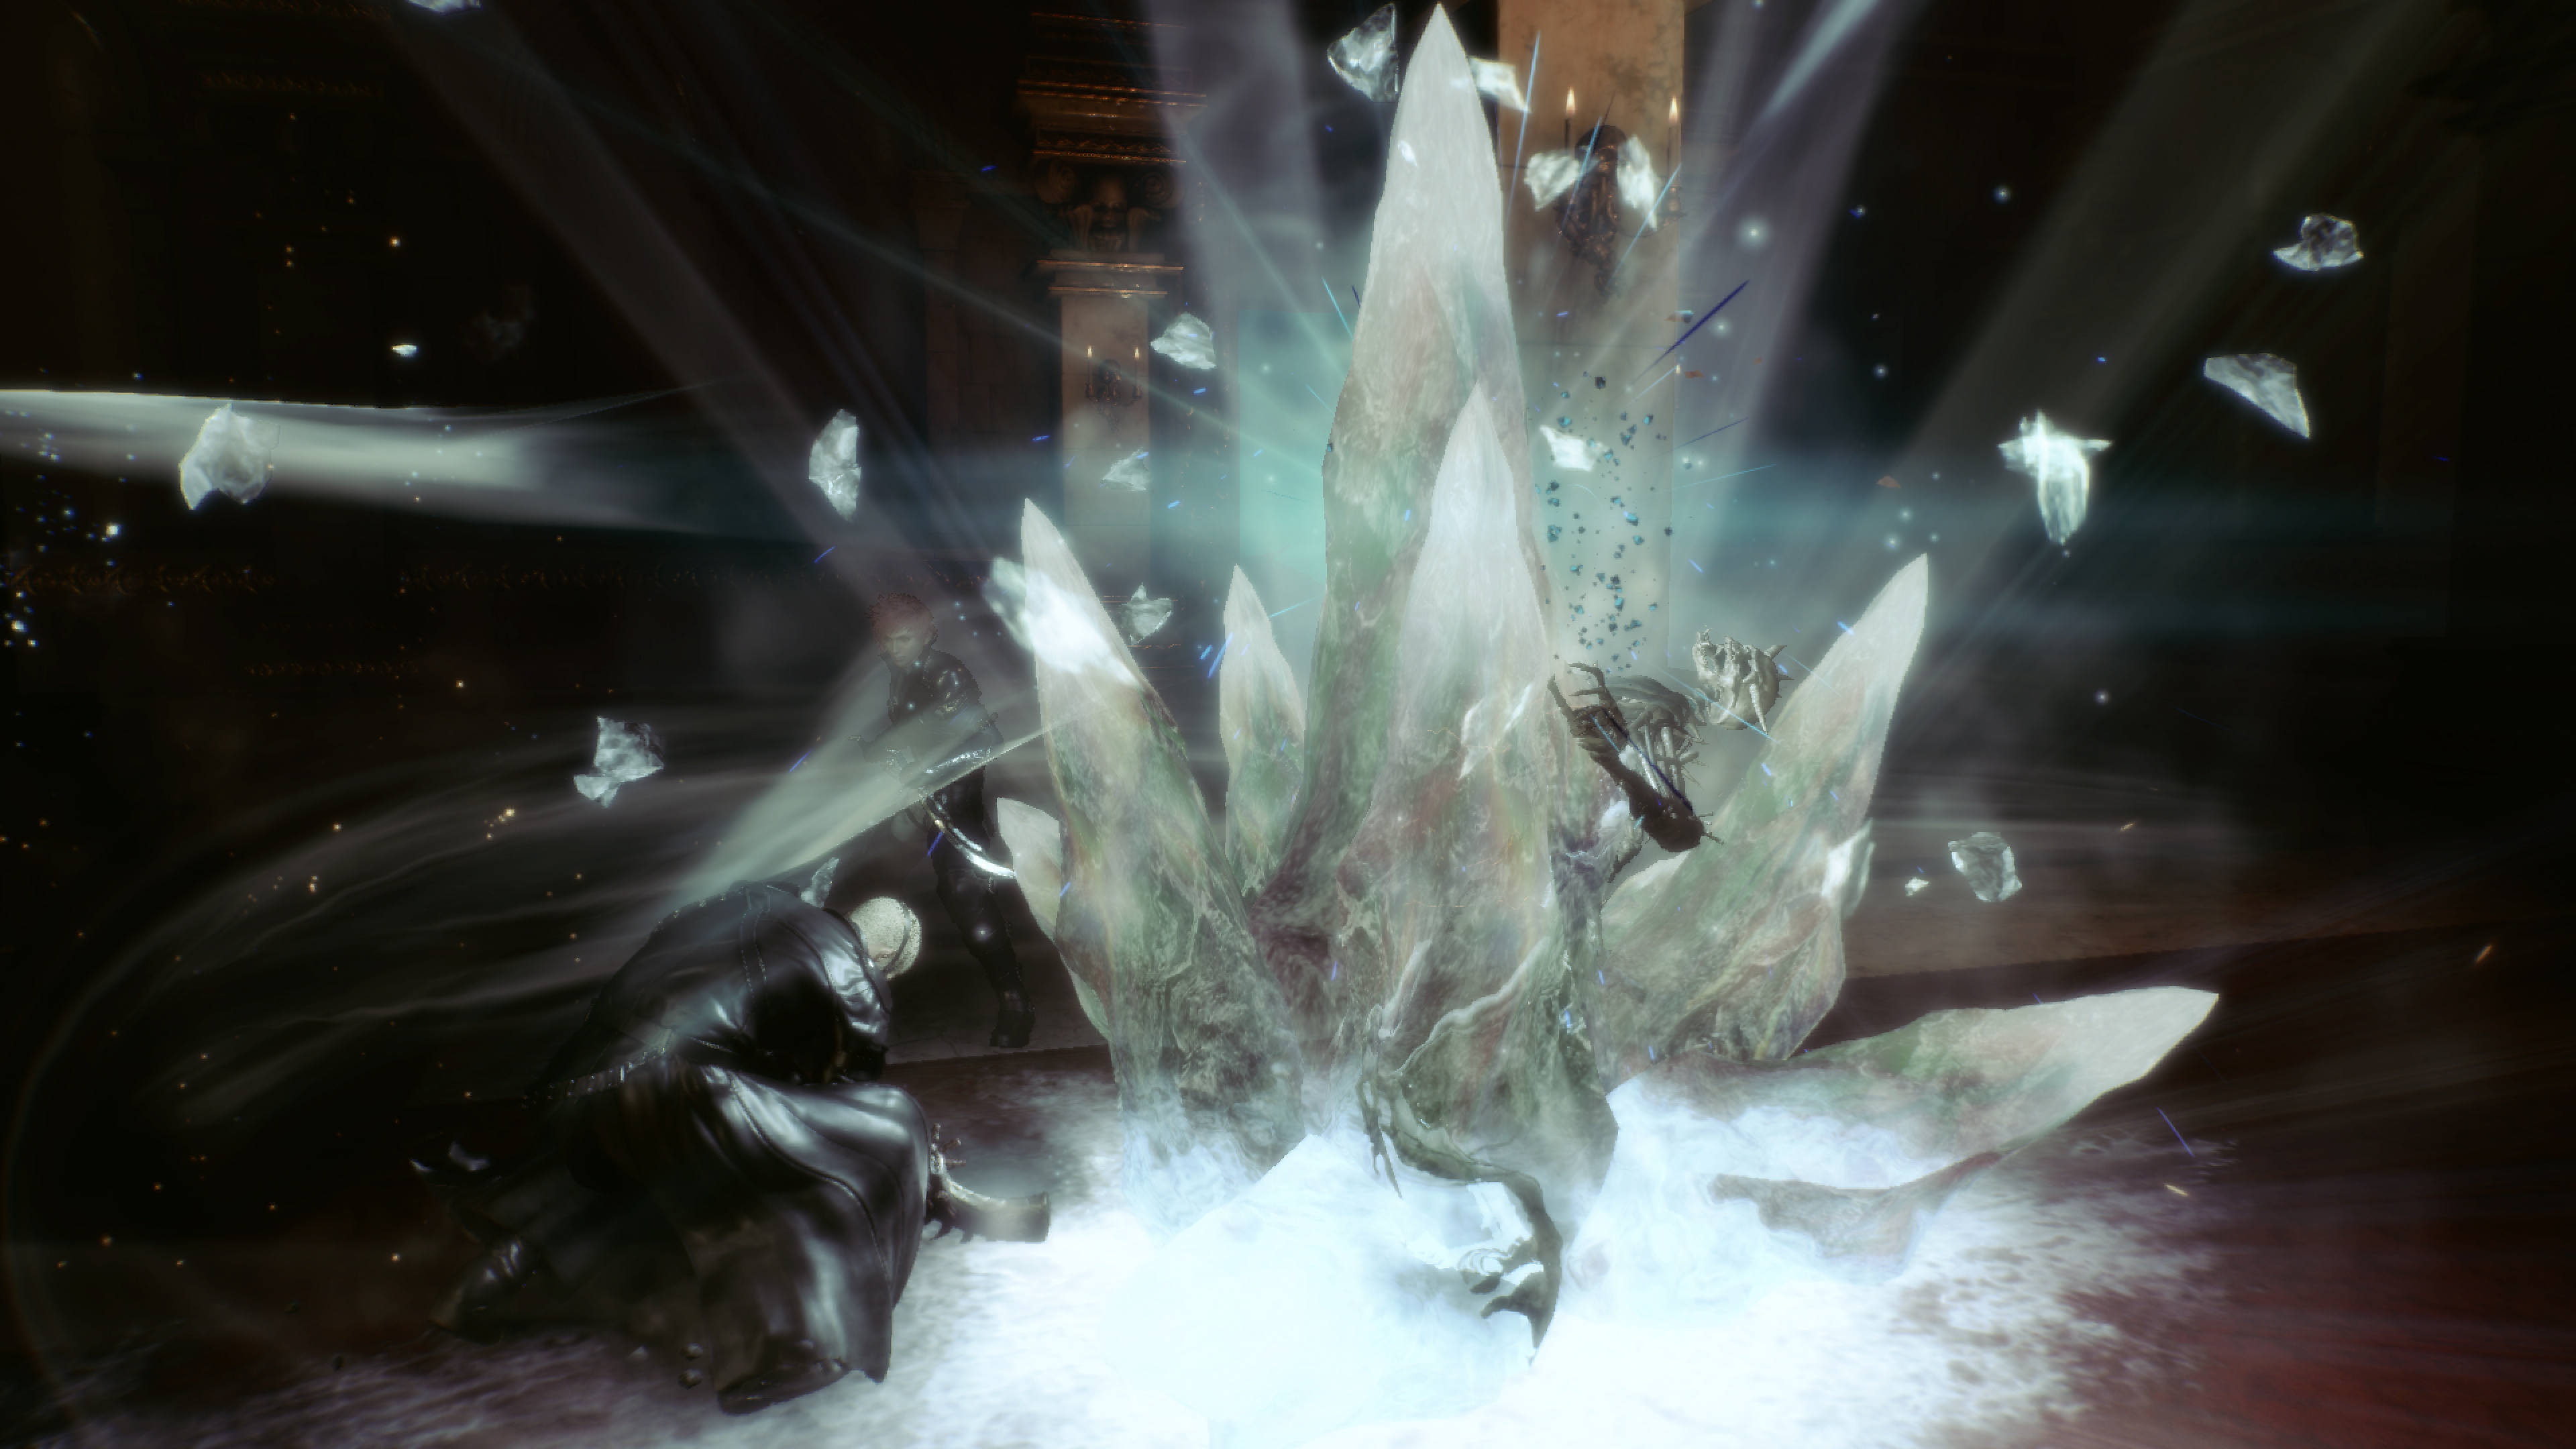 Stranger of Paradise Final Fantasy Origin - зняток екрану, на якому зображений Джек і великий уламок білого кристала, що стирчить із землі.